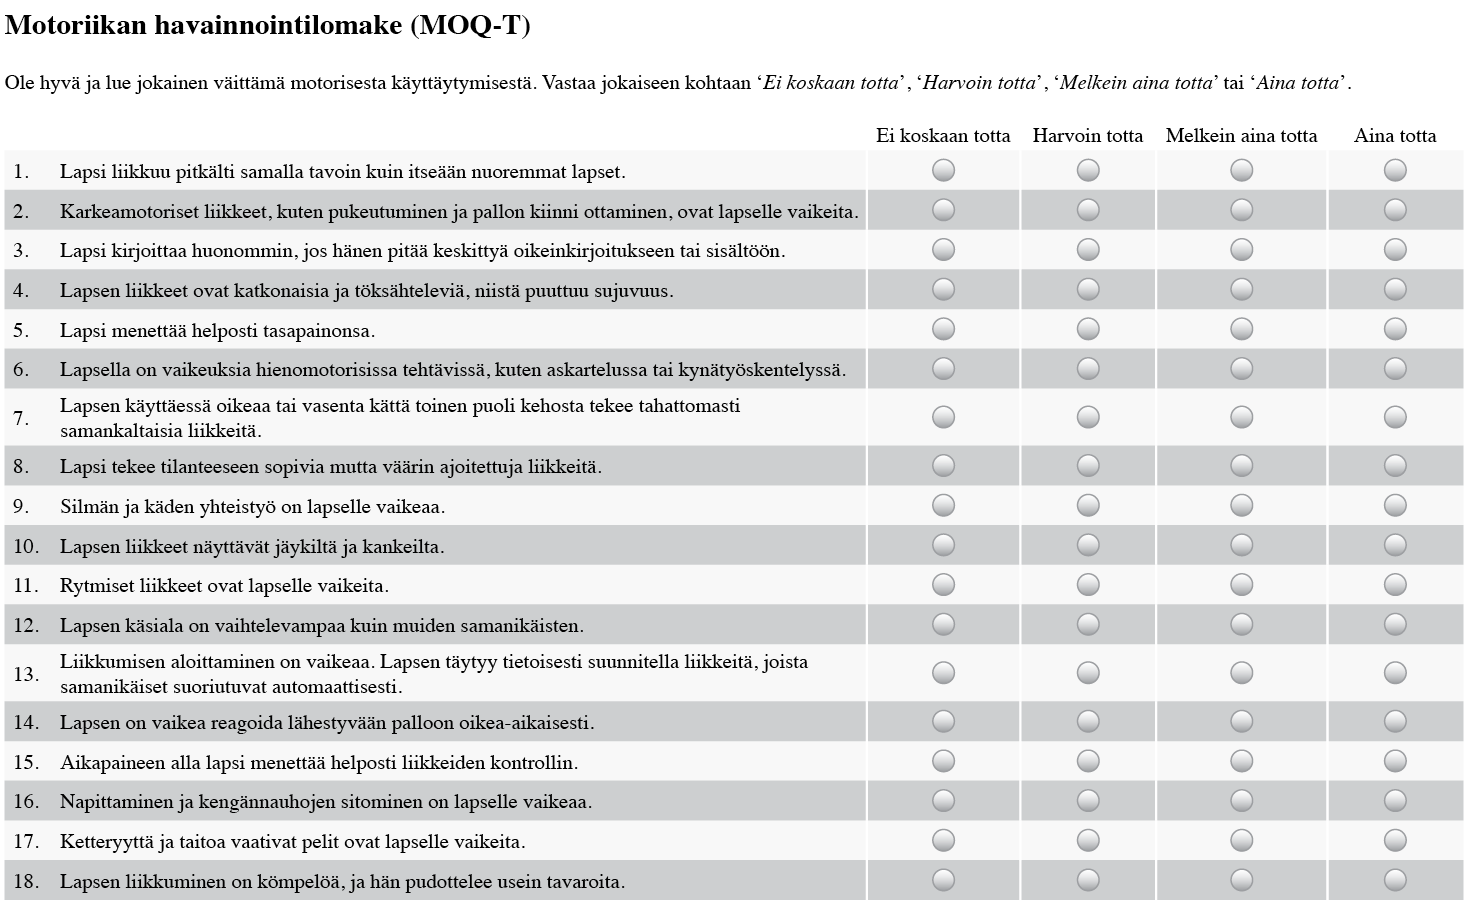 3 Motoriikan havainnointilomake (MOQ-T) Motoriikan havainnointilomake (MOQ-T, kuvio 2) on suomalainen versio hollantilaisesta Motor Observation Questionnaire for Teachers (MOQ-T) -lomakkeesta